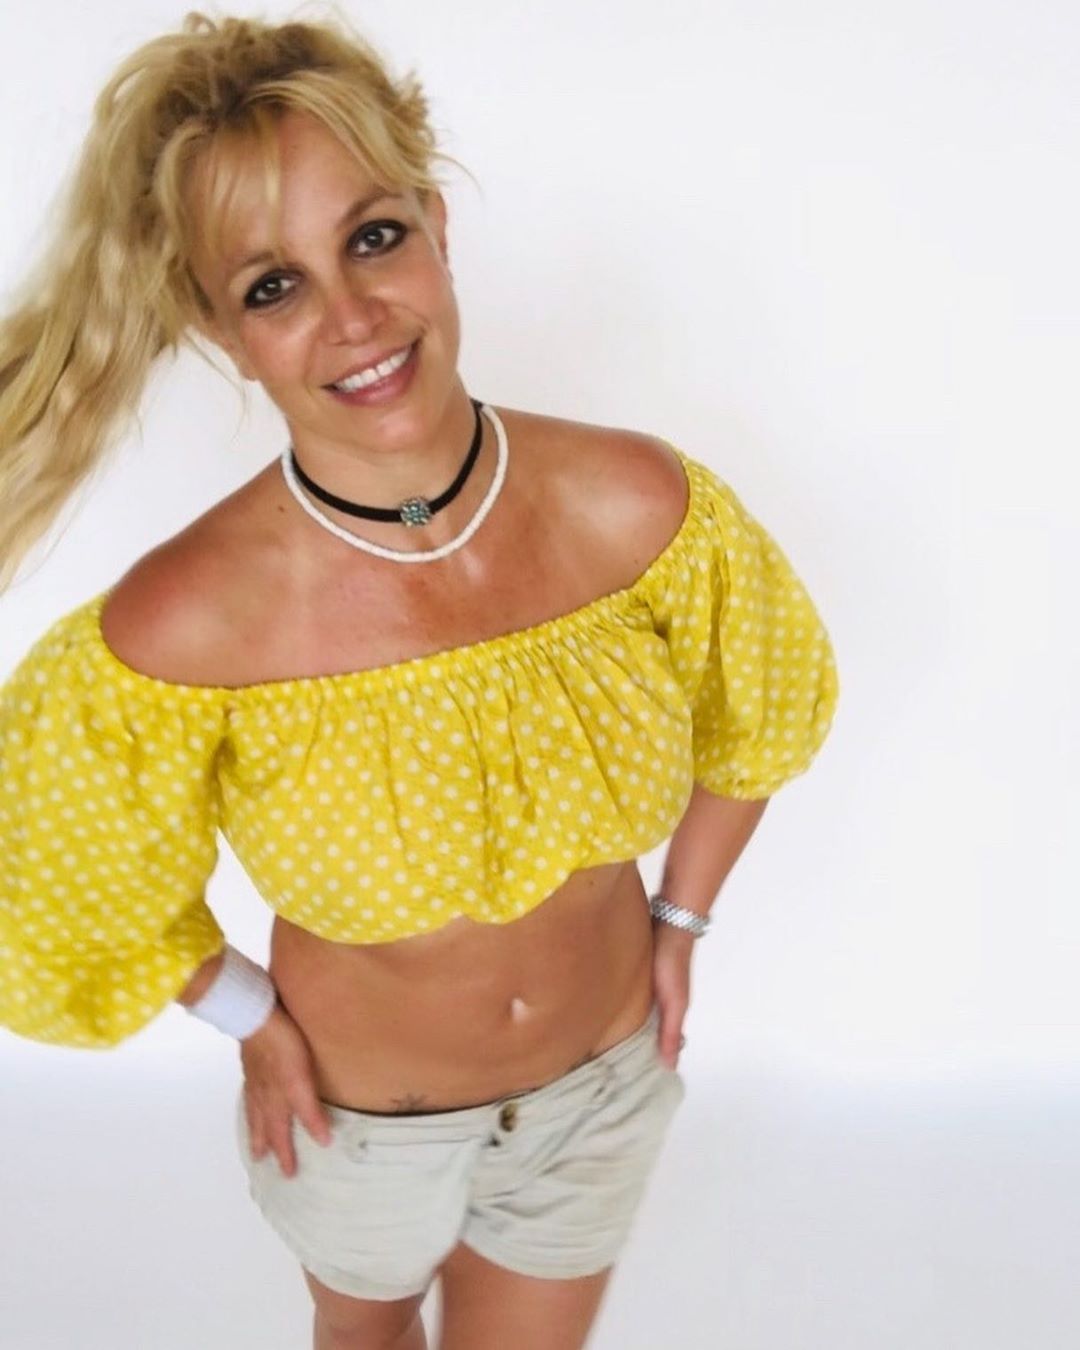 In Ningbo spears nu britney 63 Britney